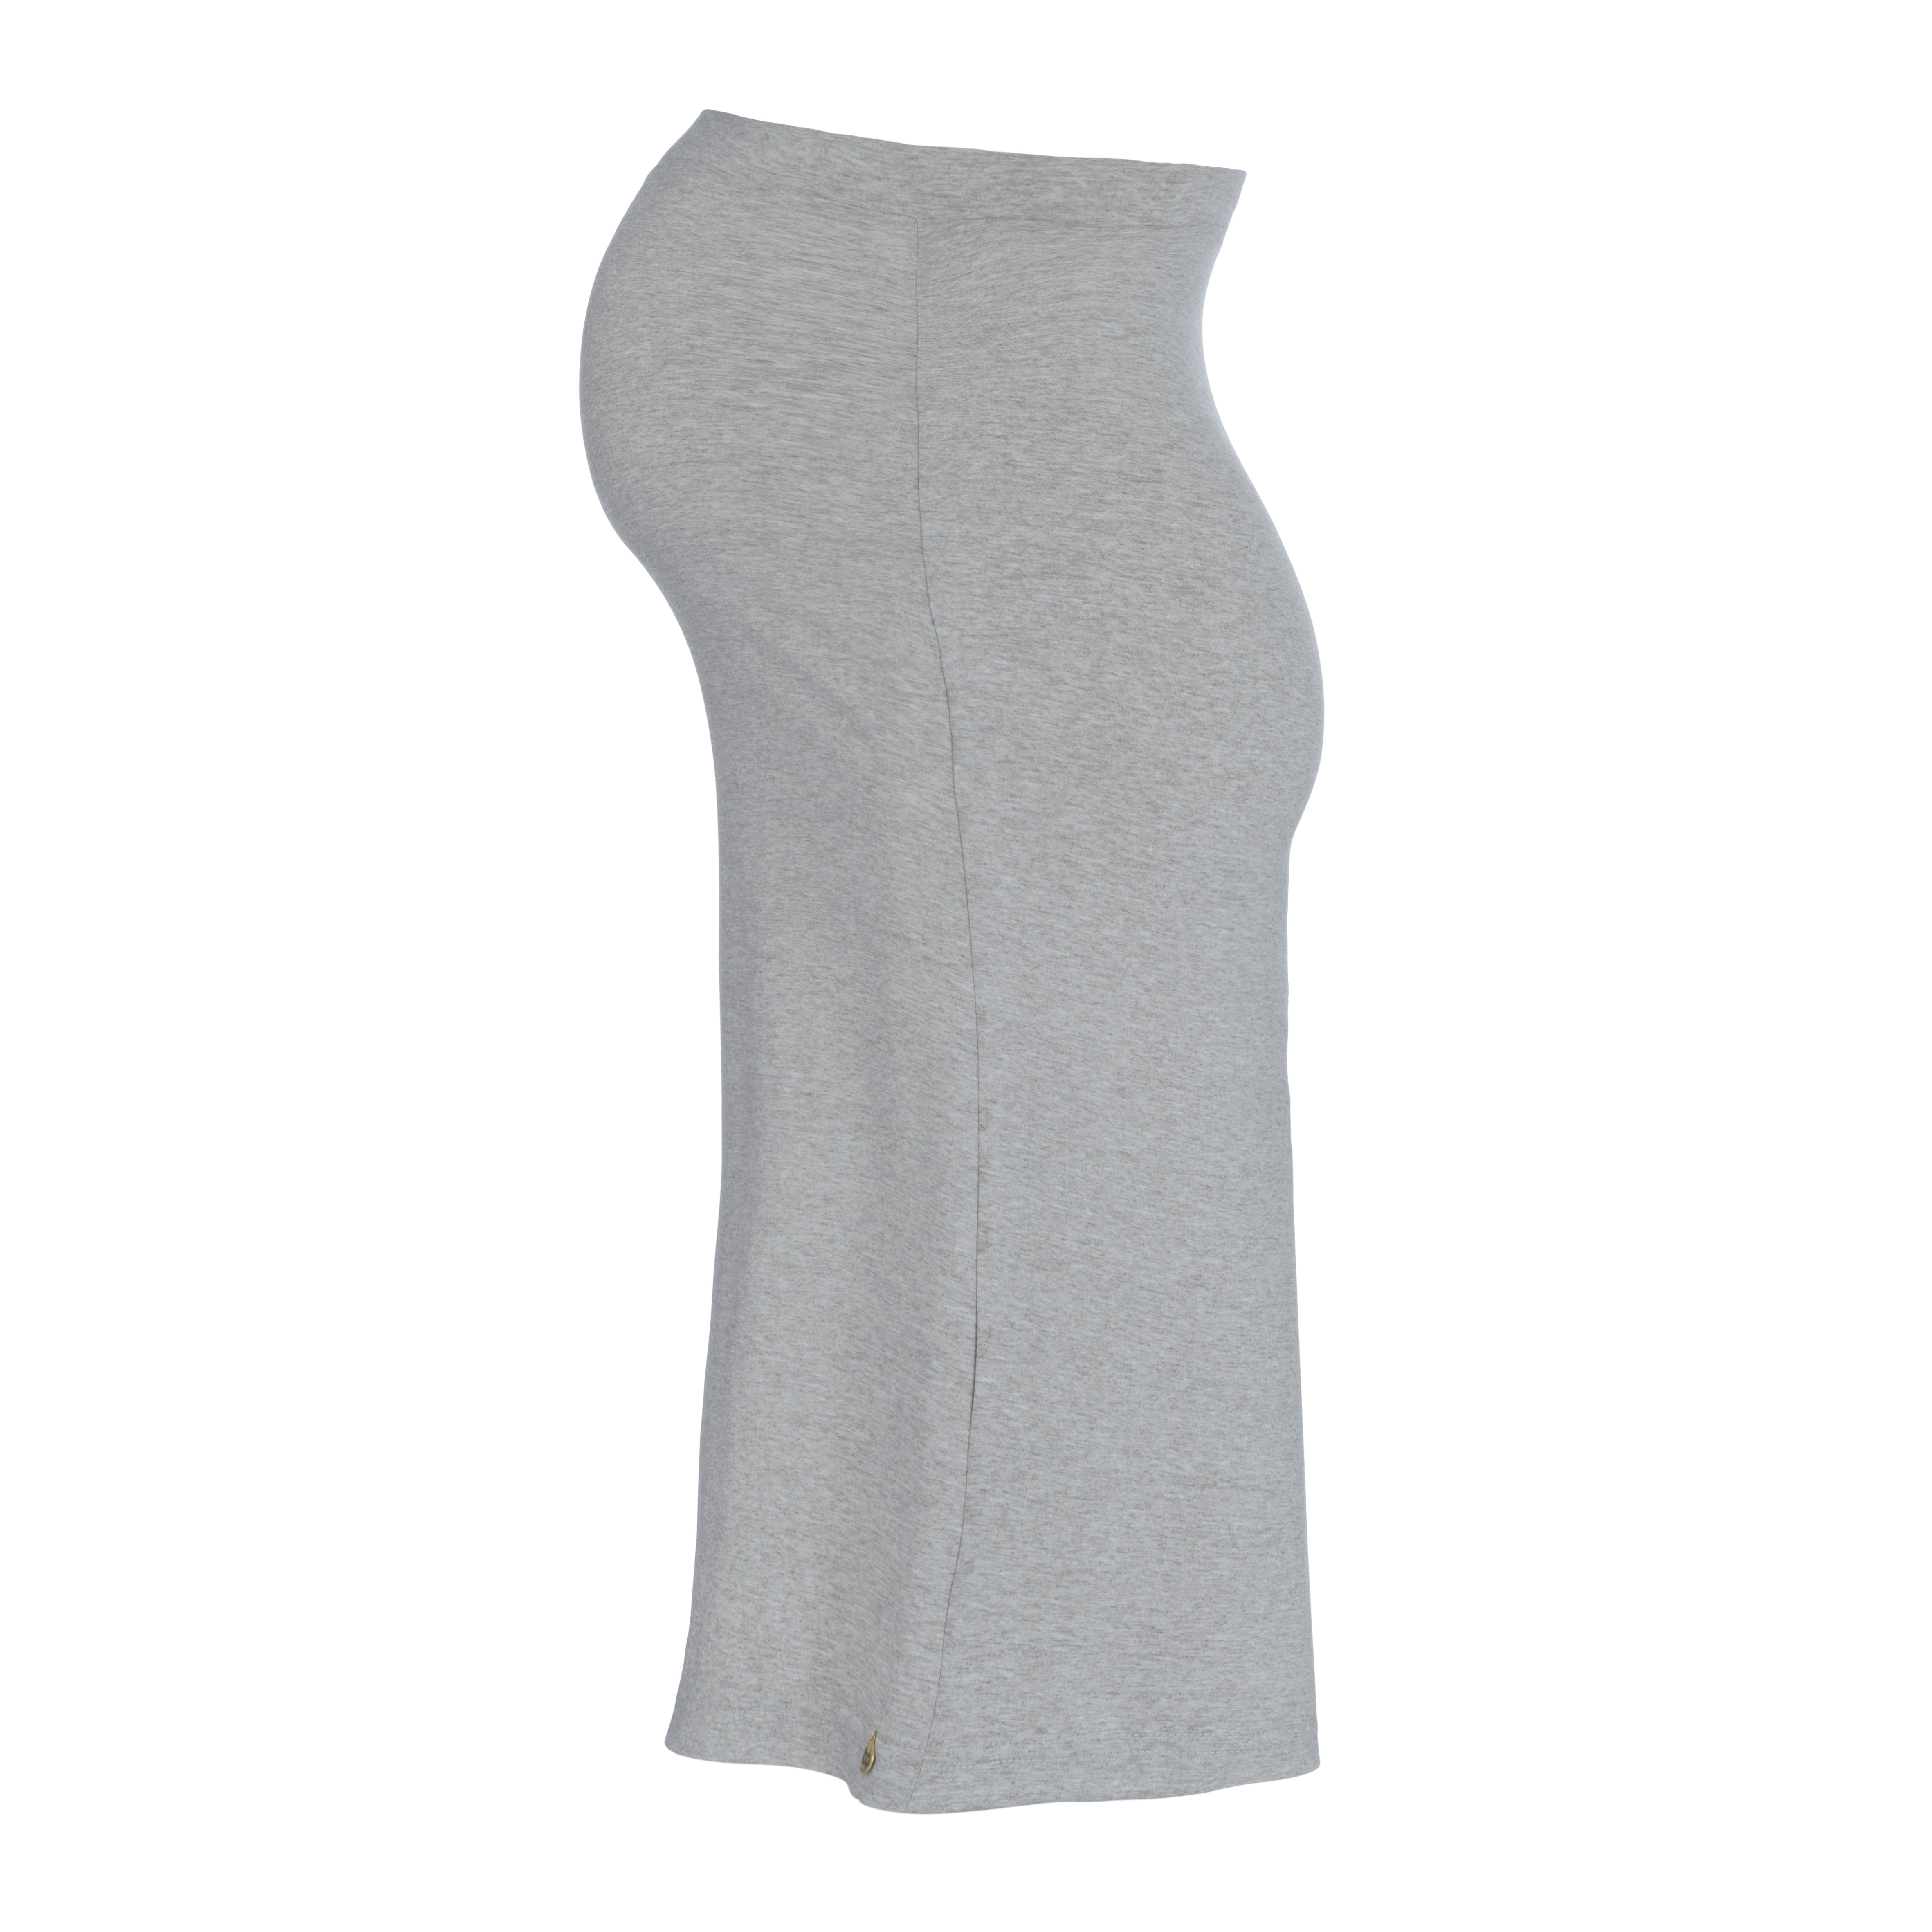 Maternity skirt Glow dusty grey - XL